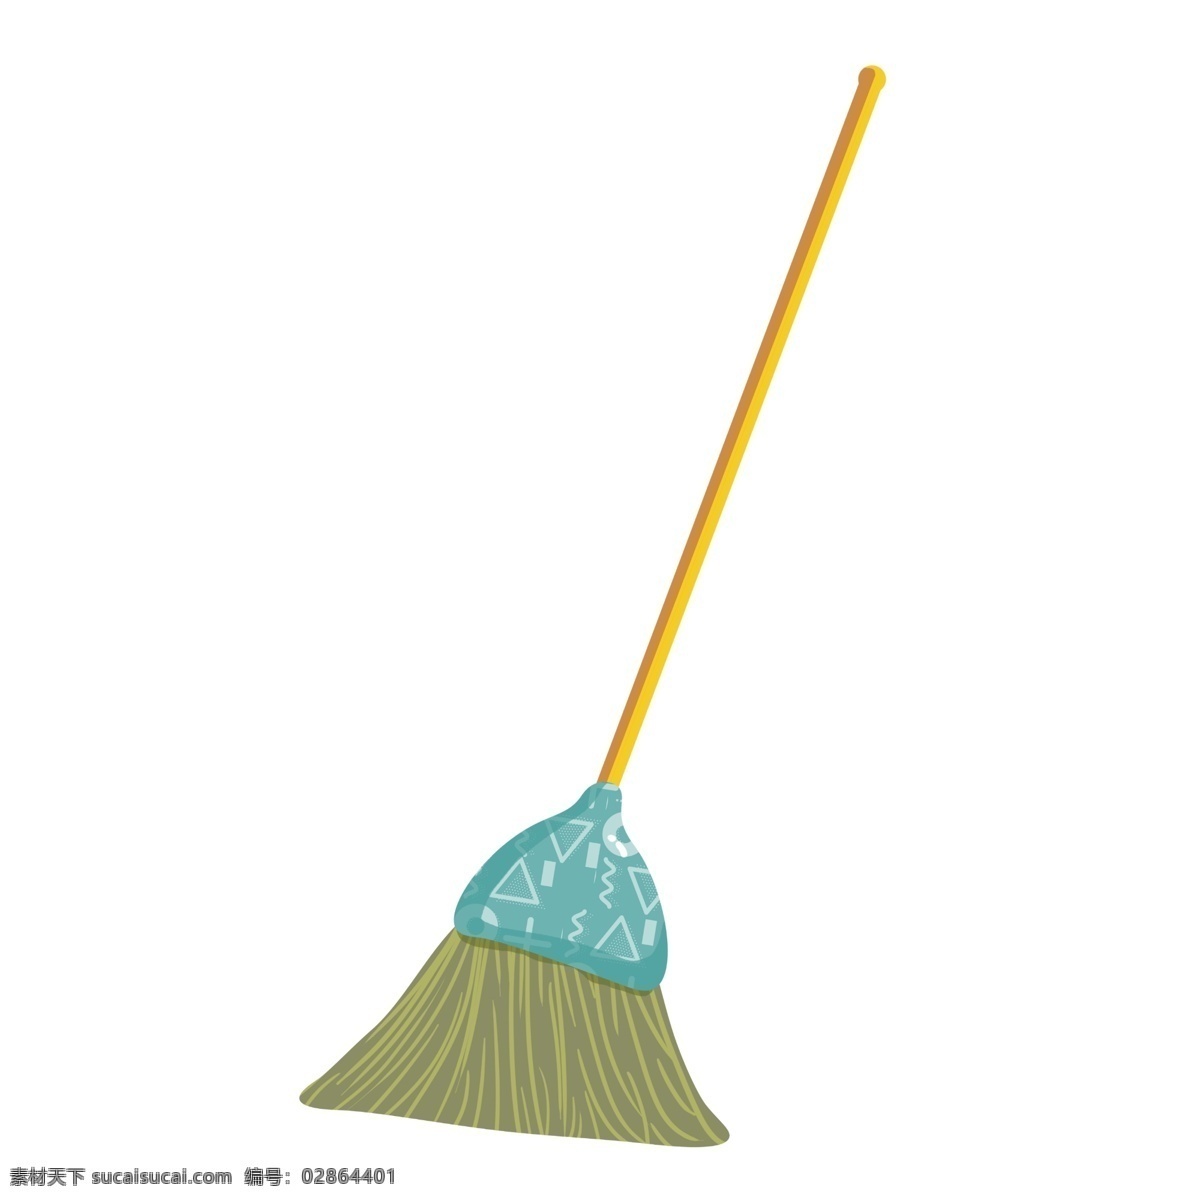 五一劳动节 清洁工具 扫帚 清洁 垃圾 扫地 劳动工具